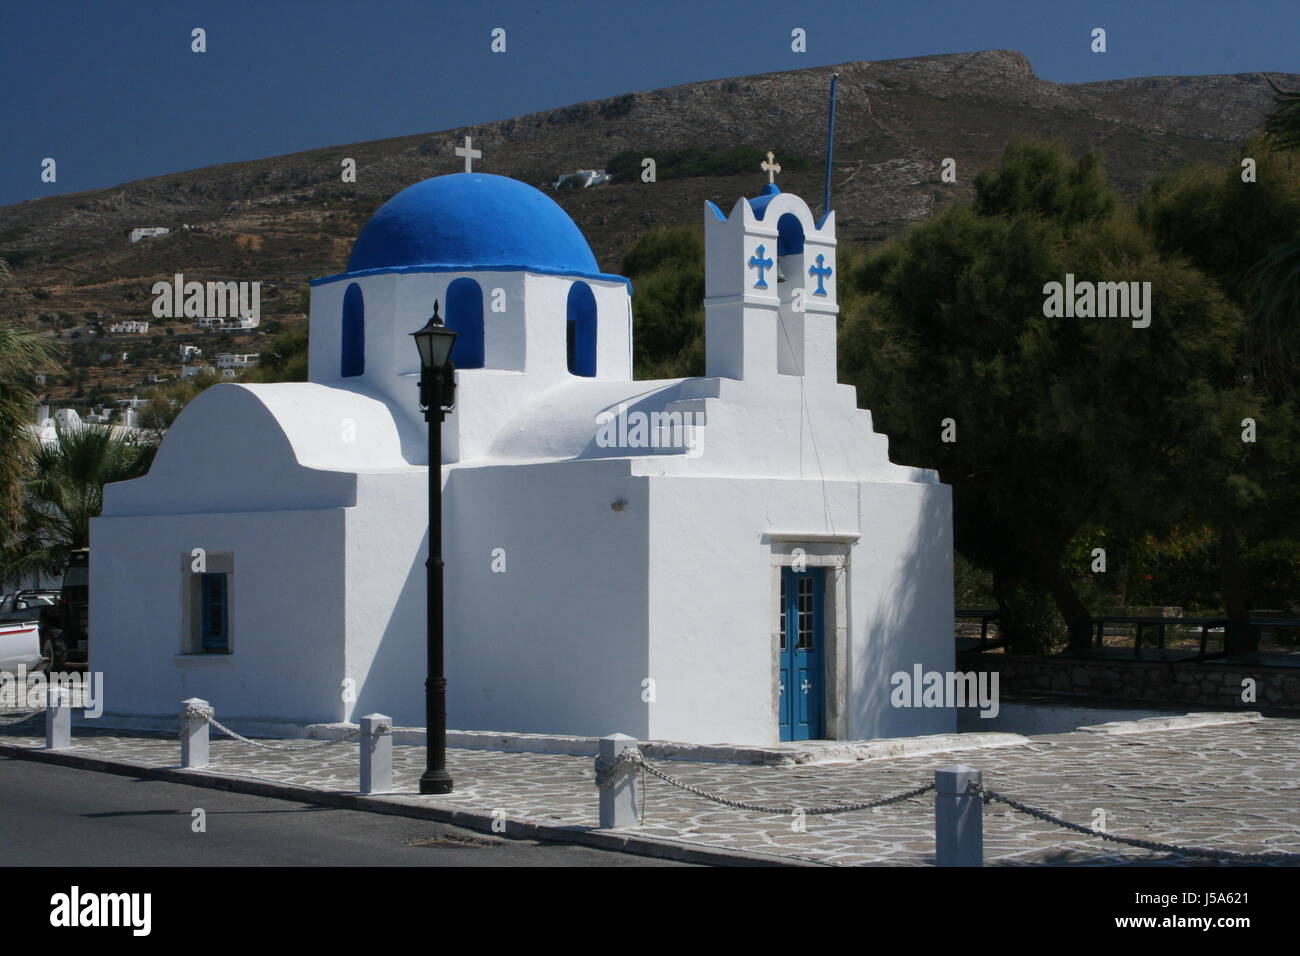 Chiesa Grecia parikia griechischer stil kykladenstil blauer himmel alter bau Foto Stock